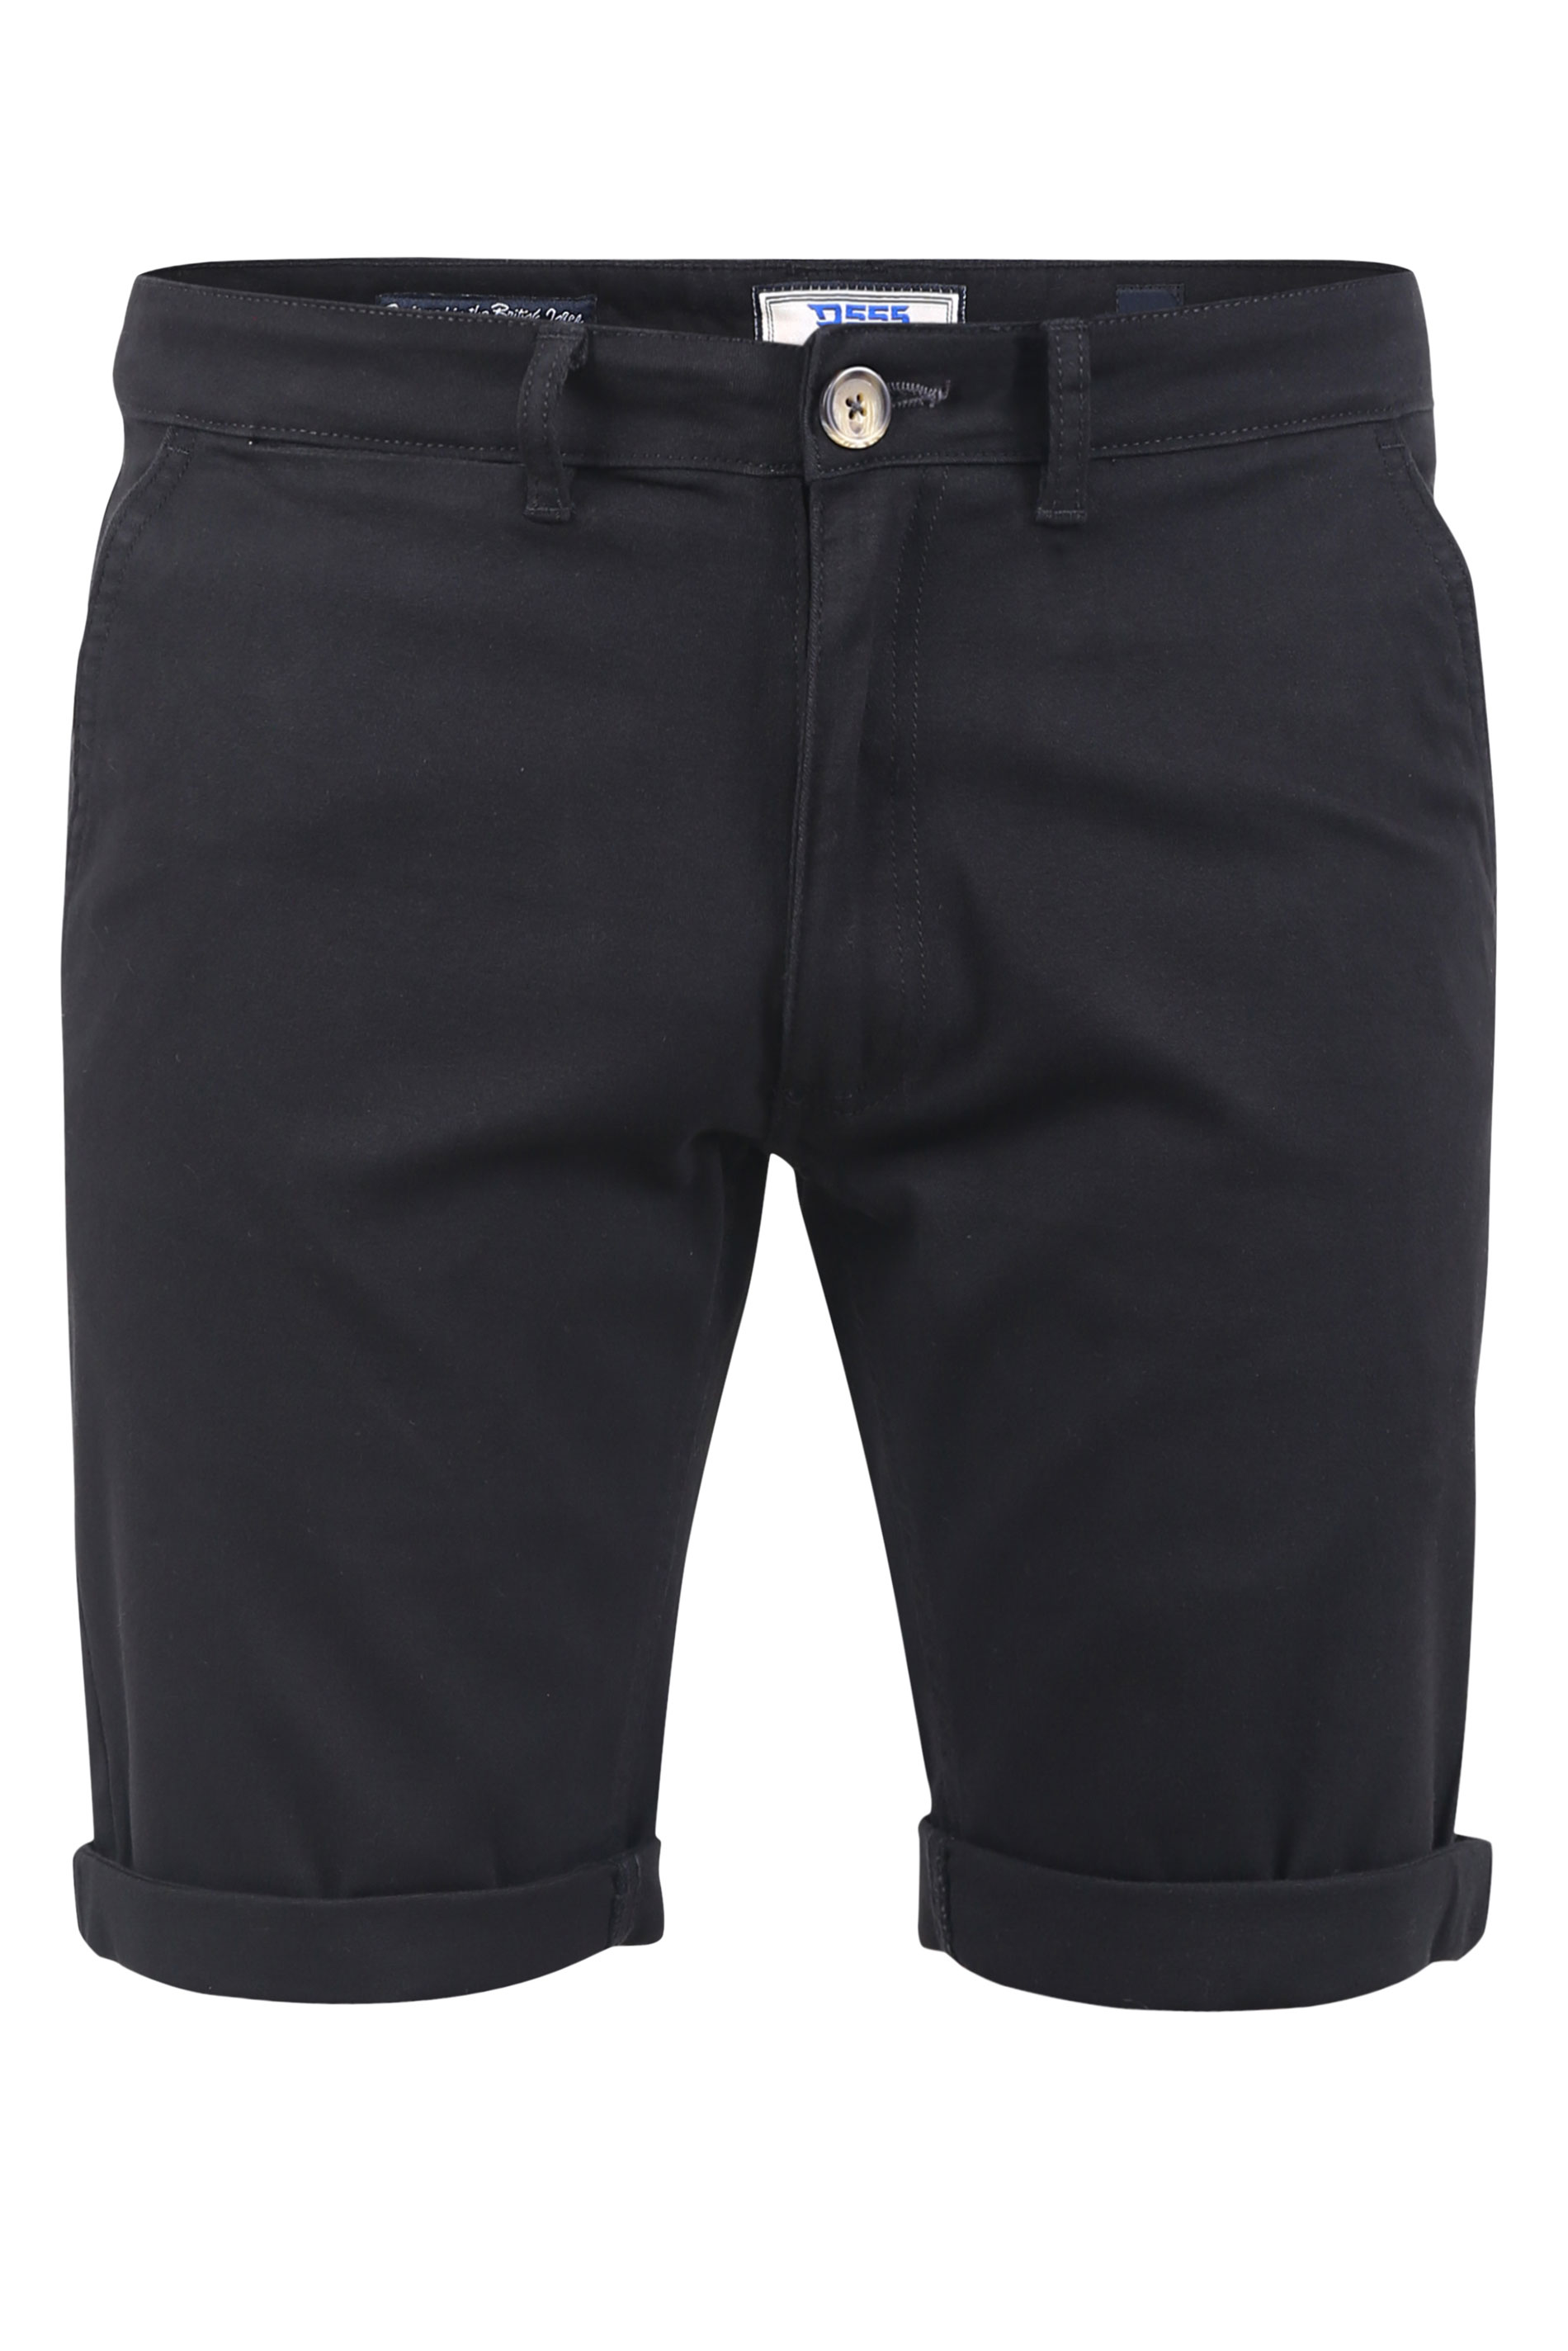 D555 Big & Tall Black Stretch Chino Shorts_F.jpg